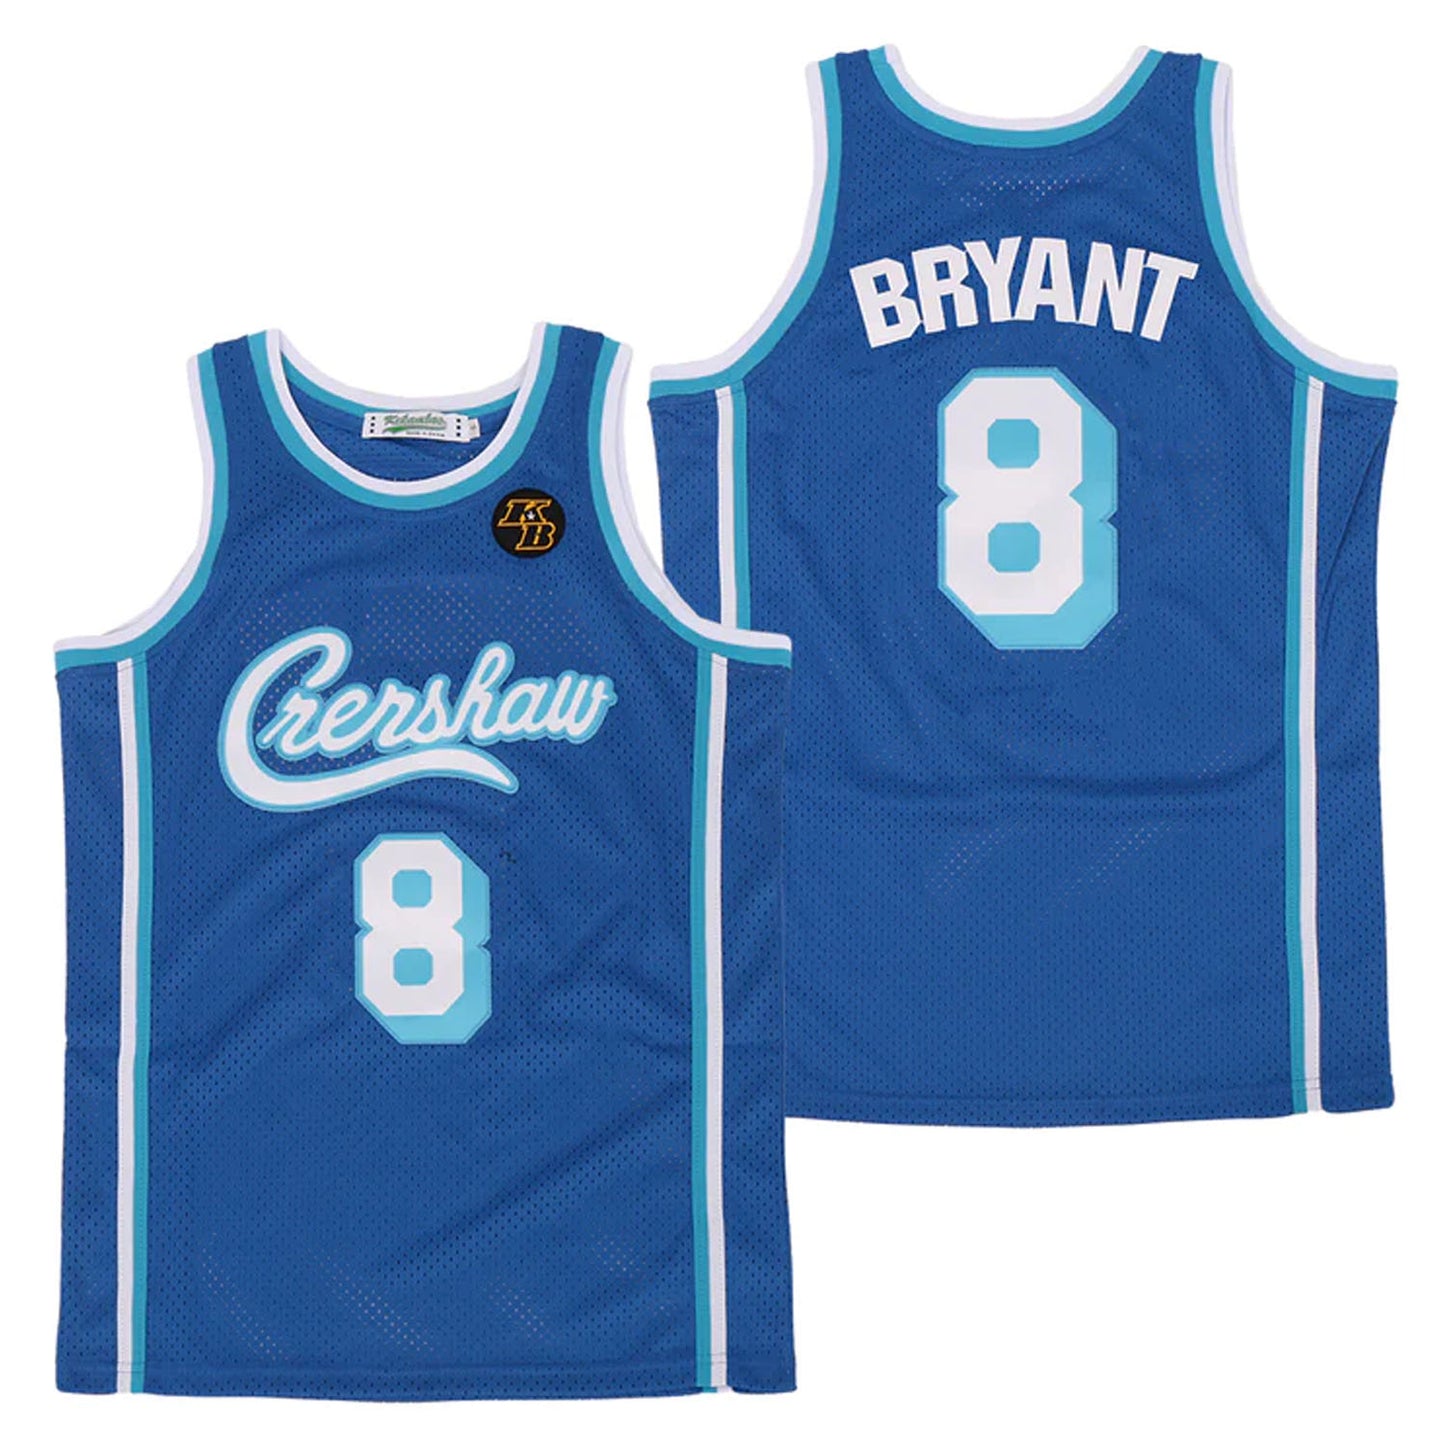 Kobe Bryant Crenshaw Jersey